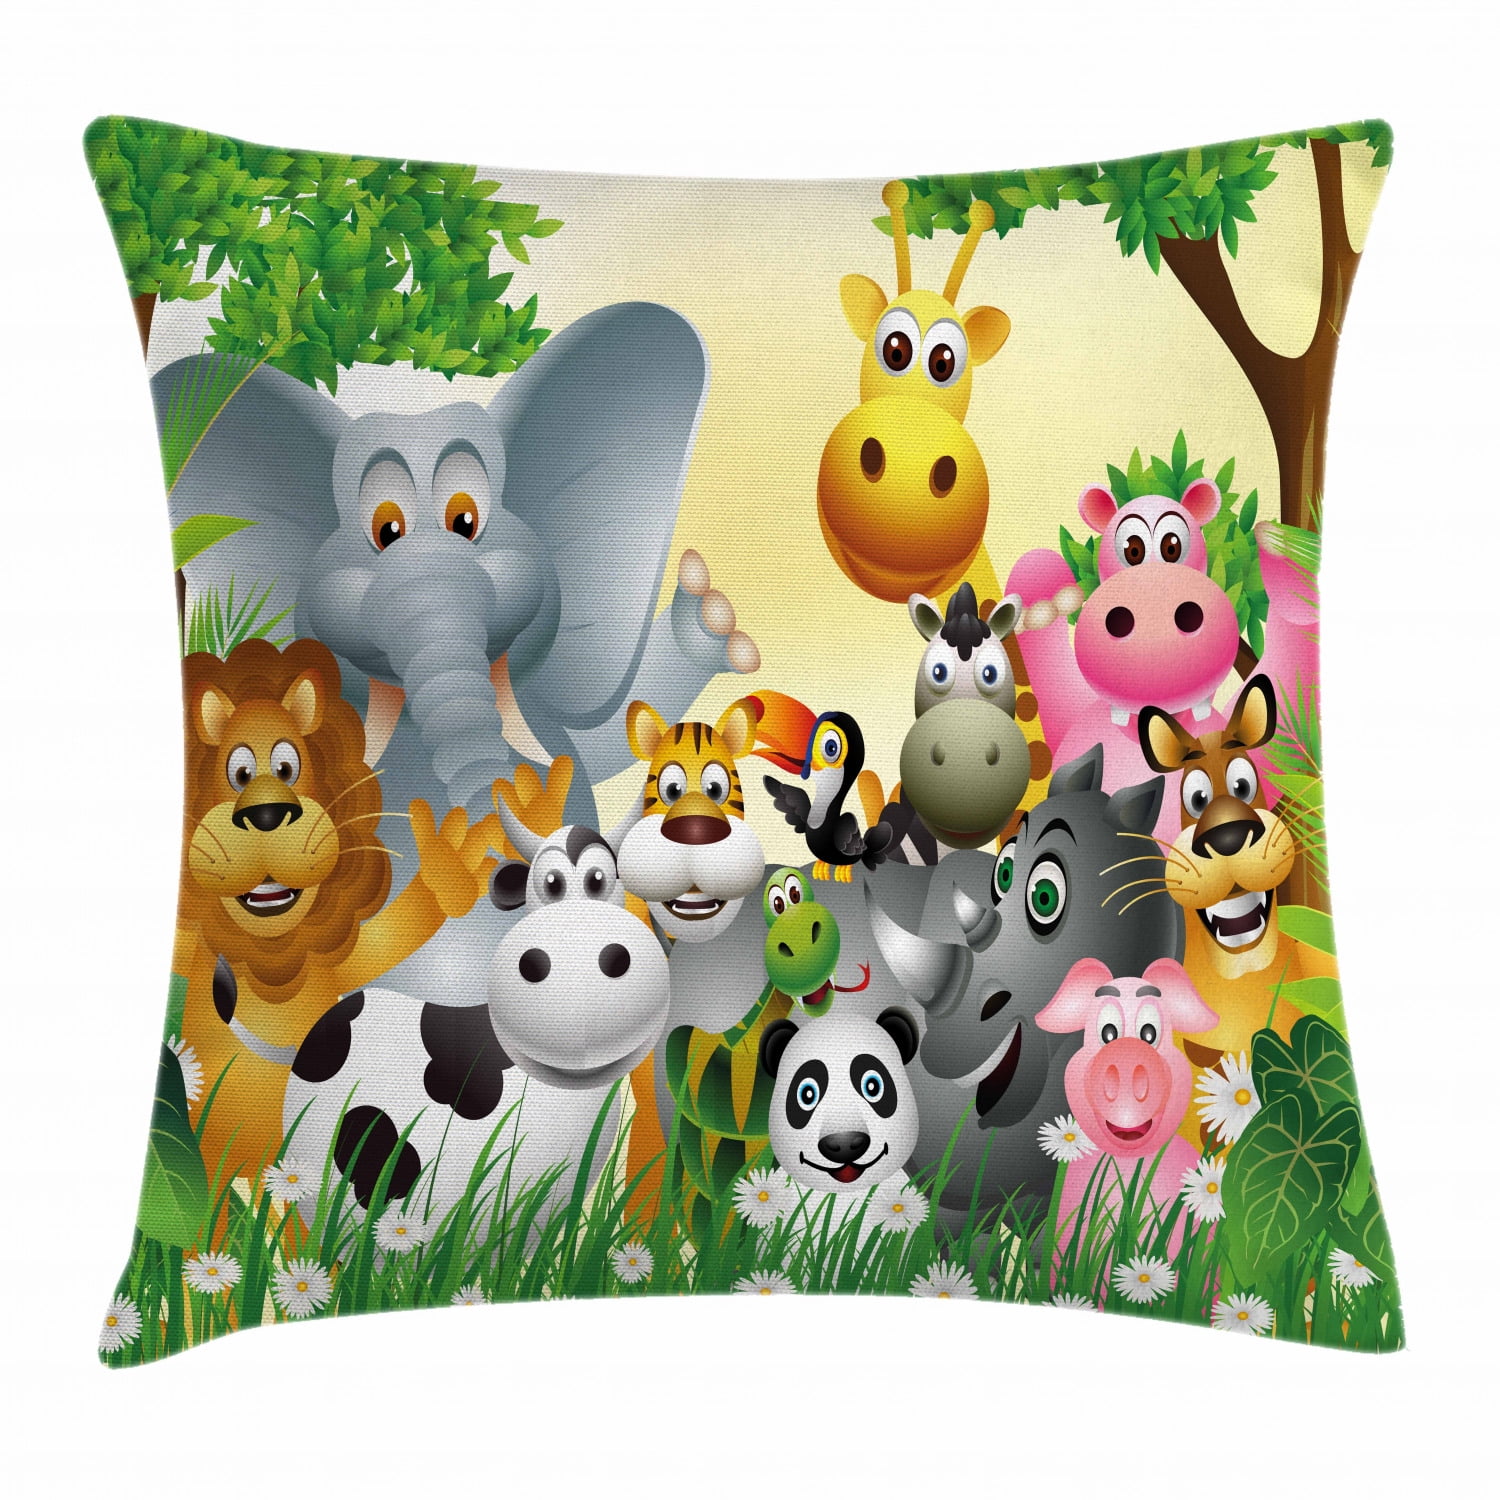 Pig Cute Cartoon Animals Cotton Linen Pillowcase Sofa Cushion Cover Home Decor 